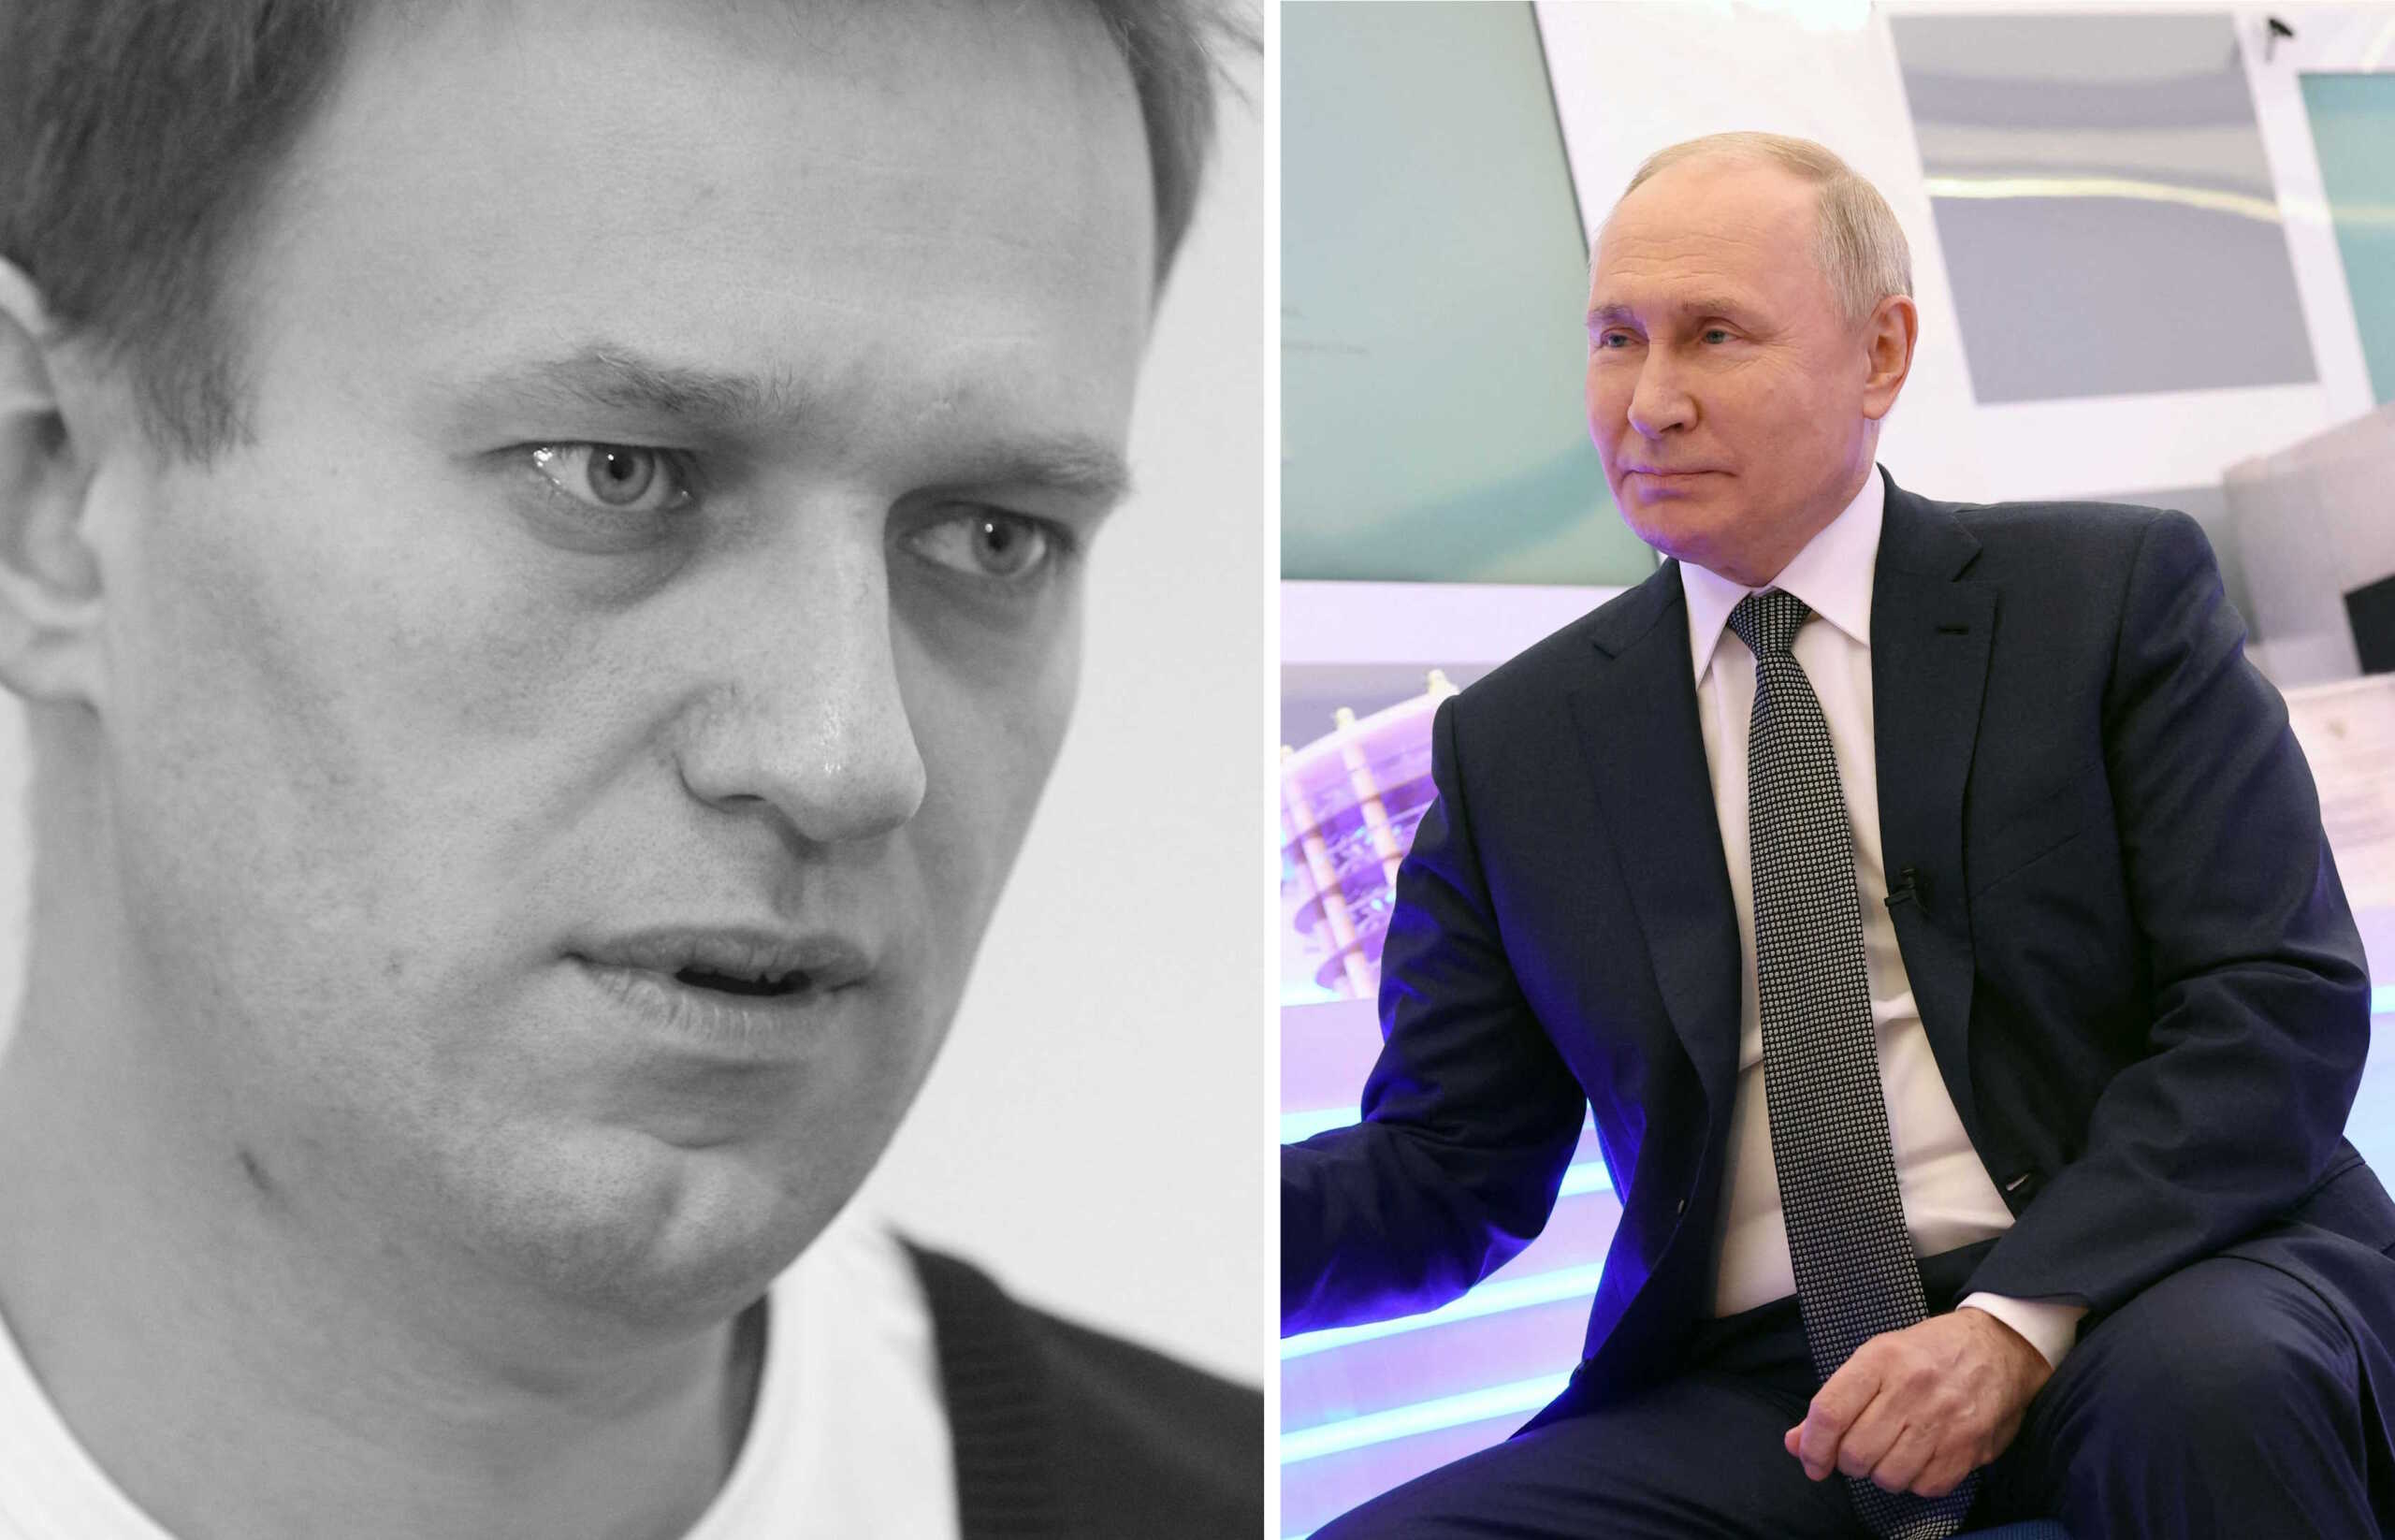 Αλεξέι Ναβάρνι: «Ο Πούτιν πληροφορήθηκε το θάνατό του» – Δεν επιβεβαιώνουν ότι πέθανε οι δικοί του άνθρωποι